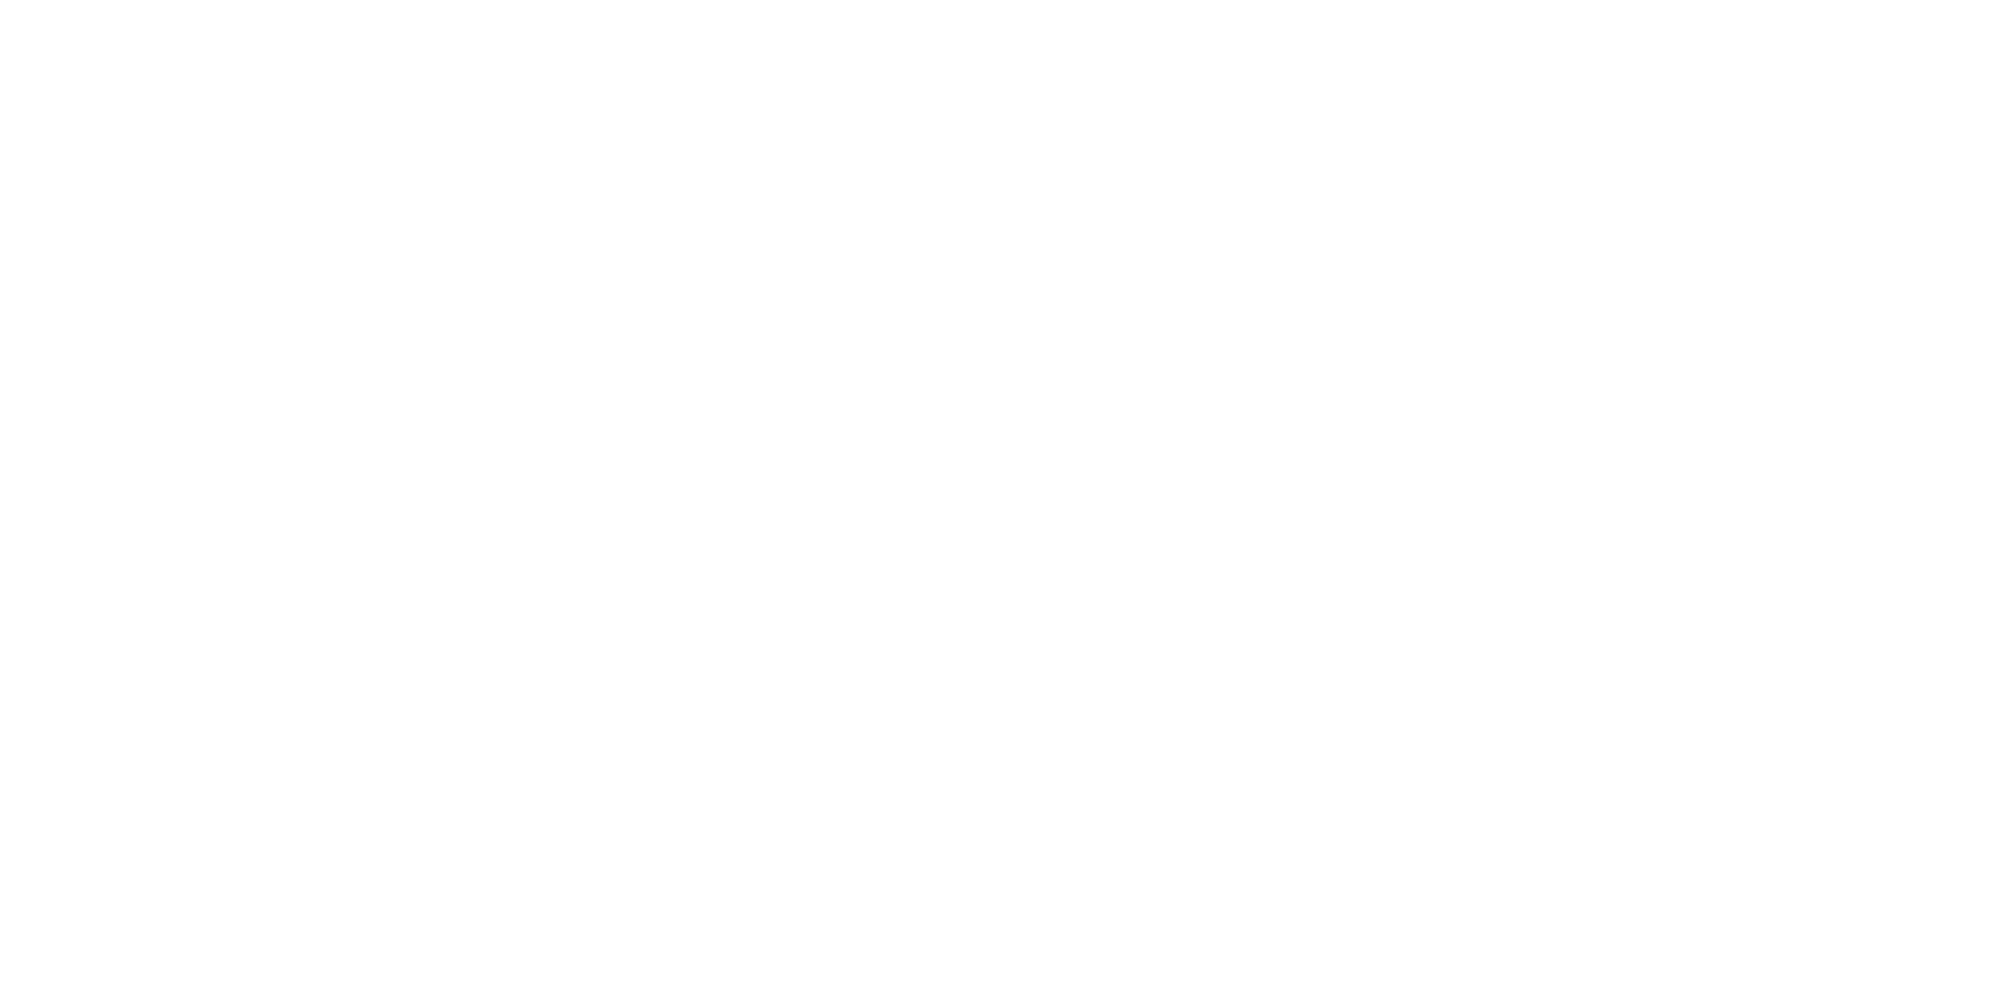 Карнизная ниша с подсветкой из профиля Flexy GARDINA3 03 в натяжных потолках с тремя пазами для установки штор и гардин в Москве, СПБ, и России